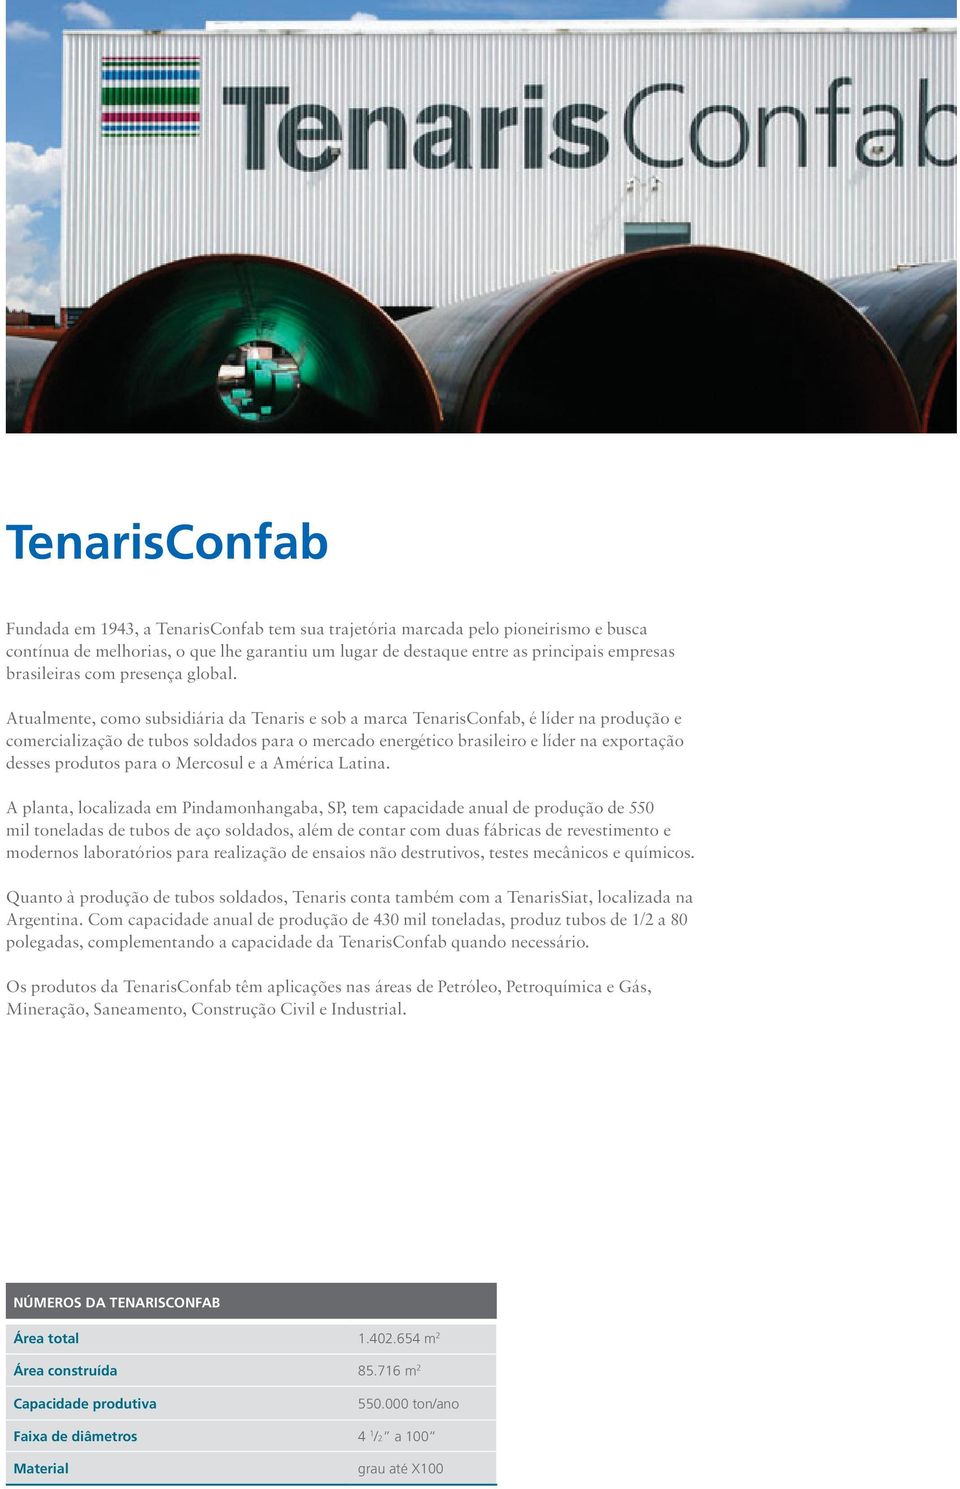 Atualmente, como subsidiária da Tenaris e sob a marca TenarisConfab, é líder na produção e comercialização de tubos soldados para o mercado energético brasileiro e líder na exportação desses produtos